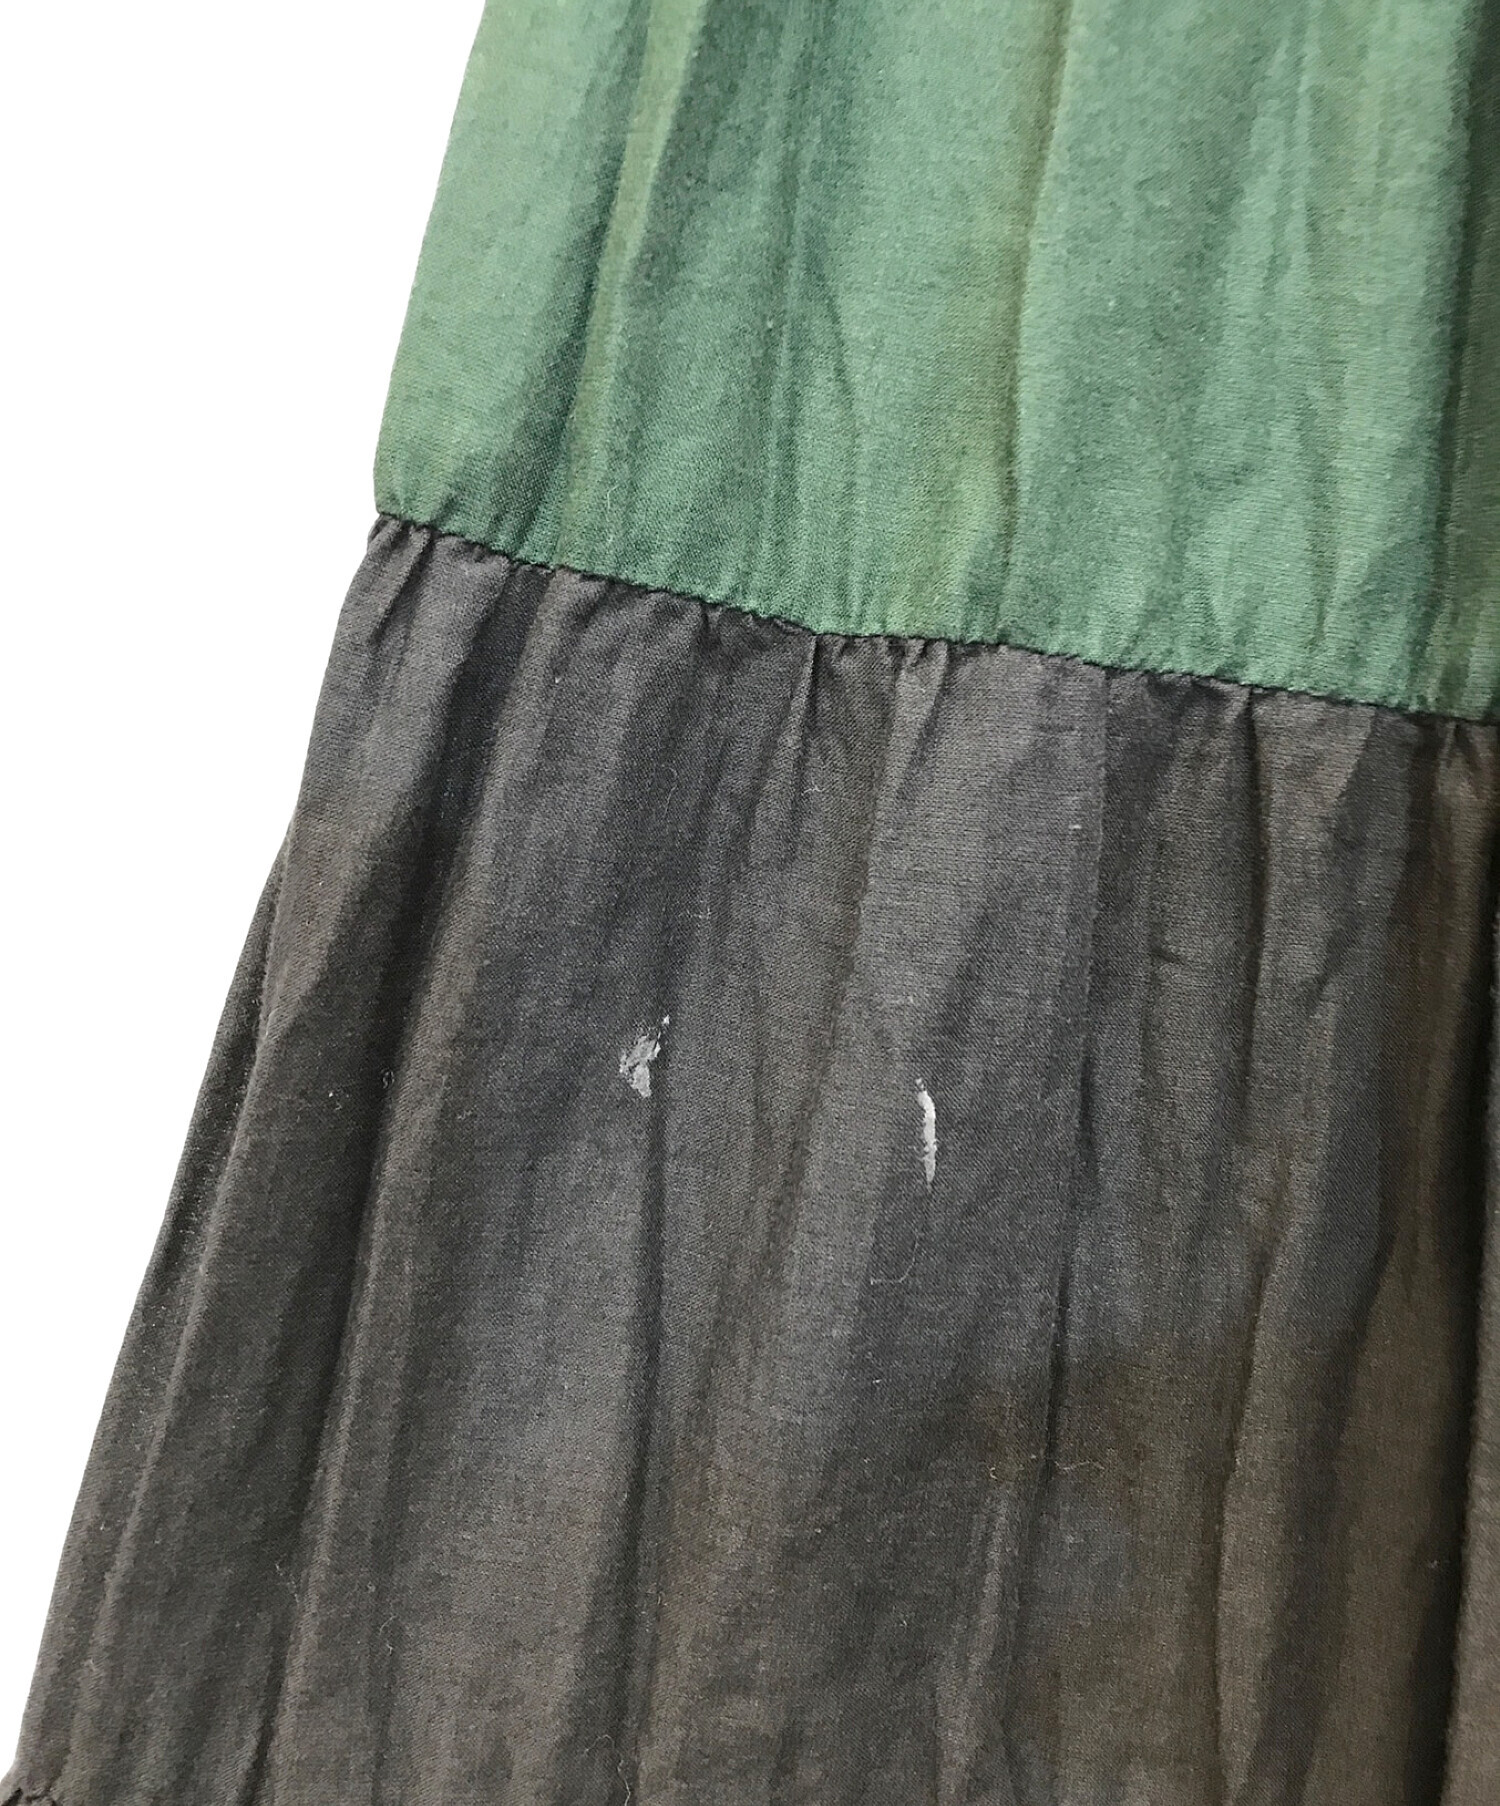 MARIHA (マリハ) Adam et Rope (アダムエロペ) 草原の虹のスカート ブラック×グリーン  サイズ:表記無し（実寸のご確認をお願い致します。）